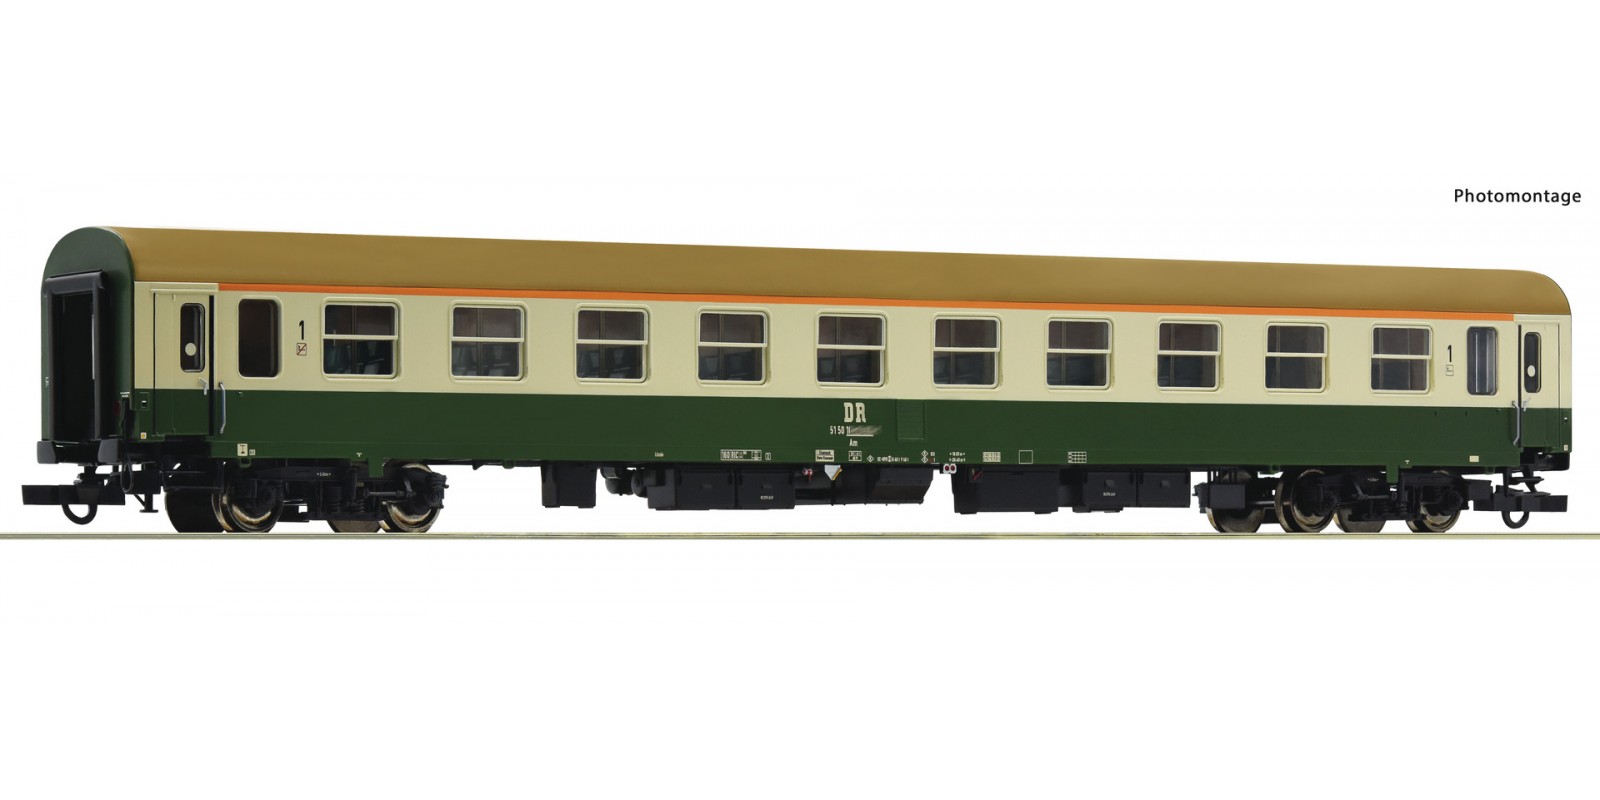 RO74800 1st class express train passenger coach, DR